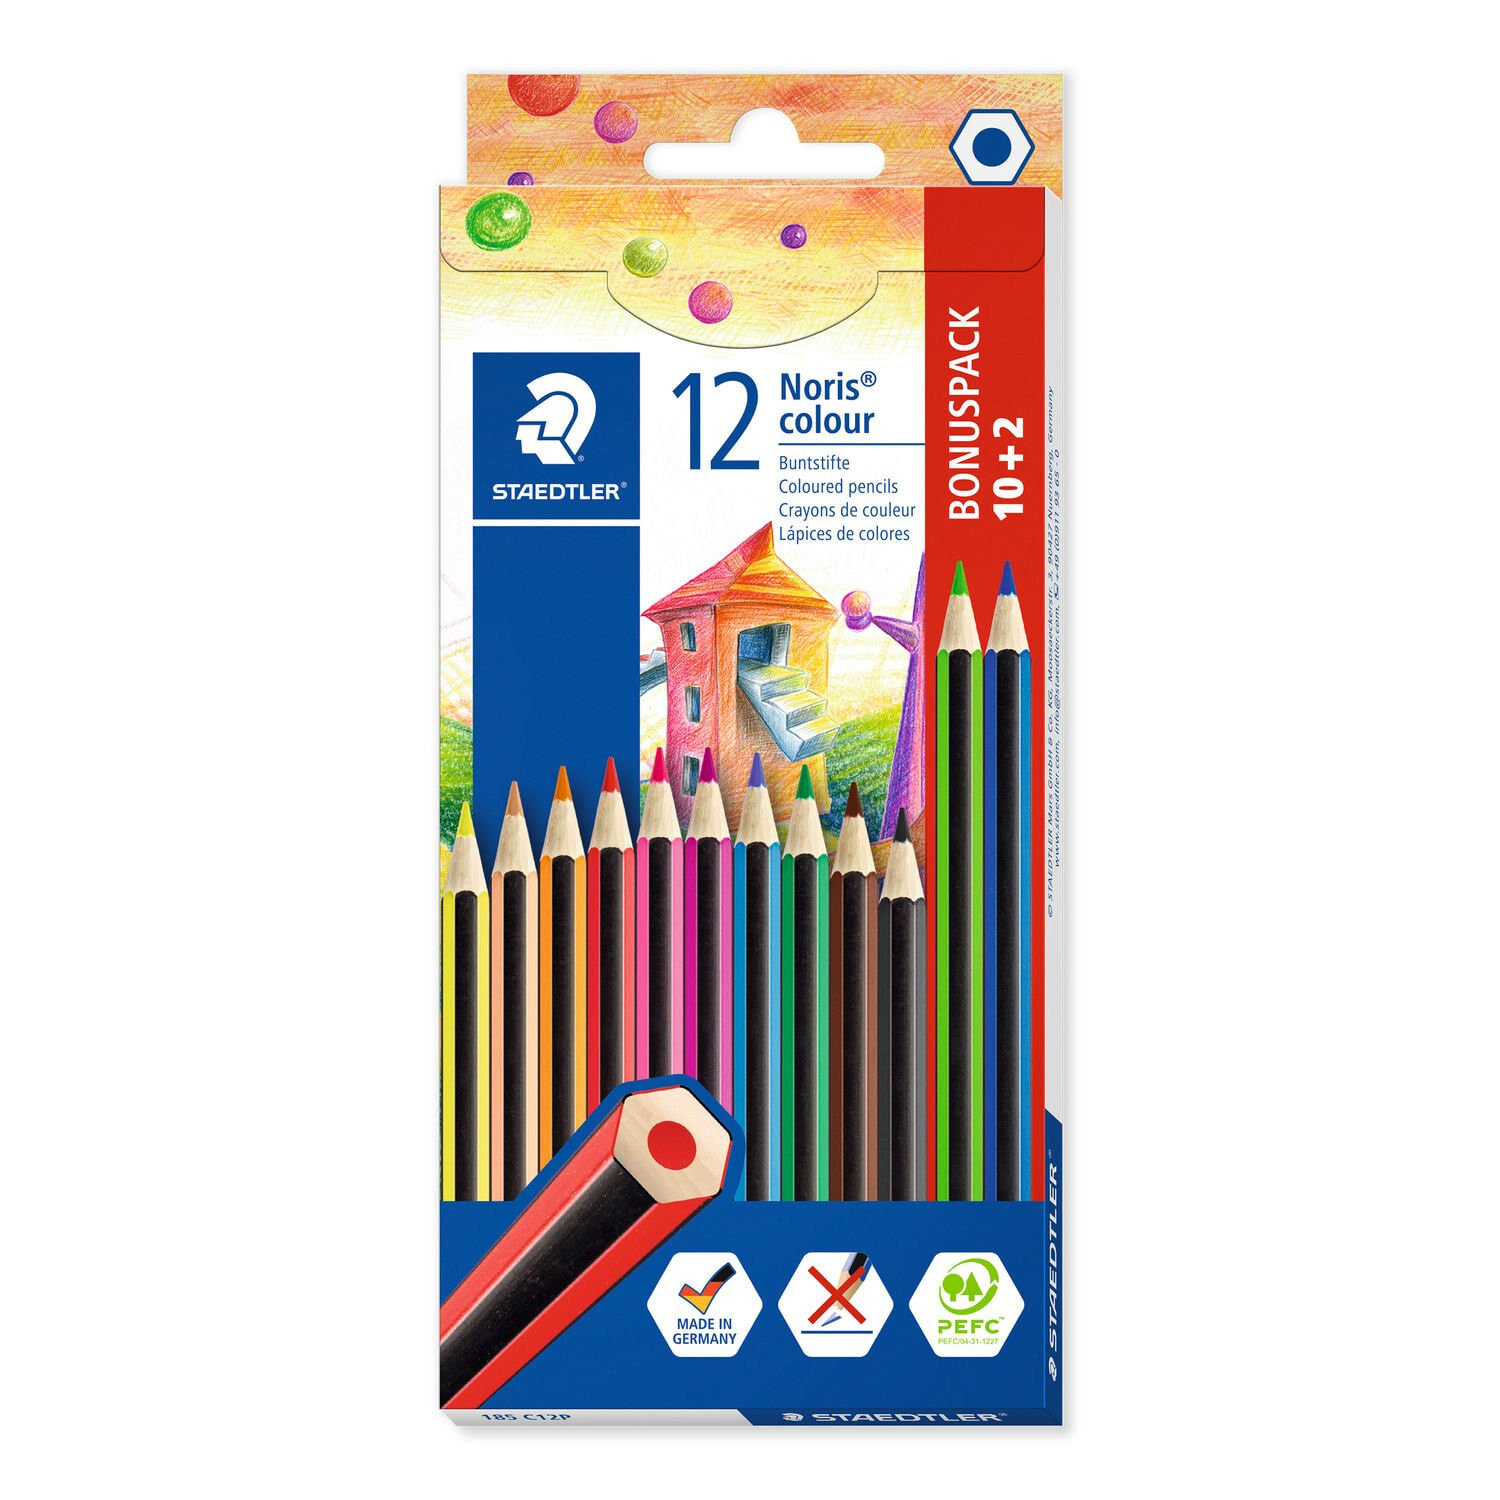 Staedtler Noris colour 185 цветной карандаш Черный, Синий, Коричневый, Зеленый, Пурпурный, Оранжевый, Персиковый, Пурпурный, Красный, Желтый 12 шт 185 C12P